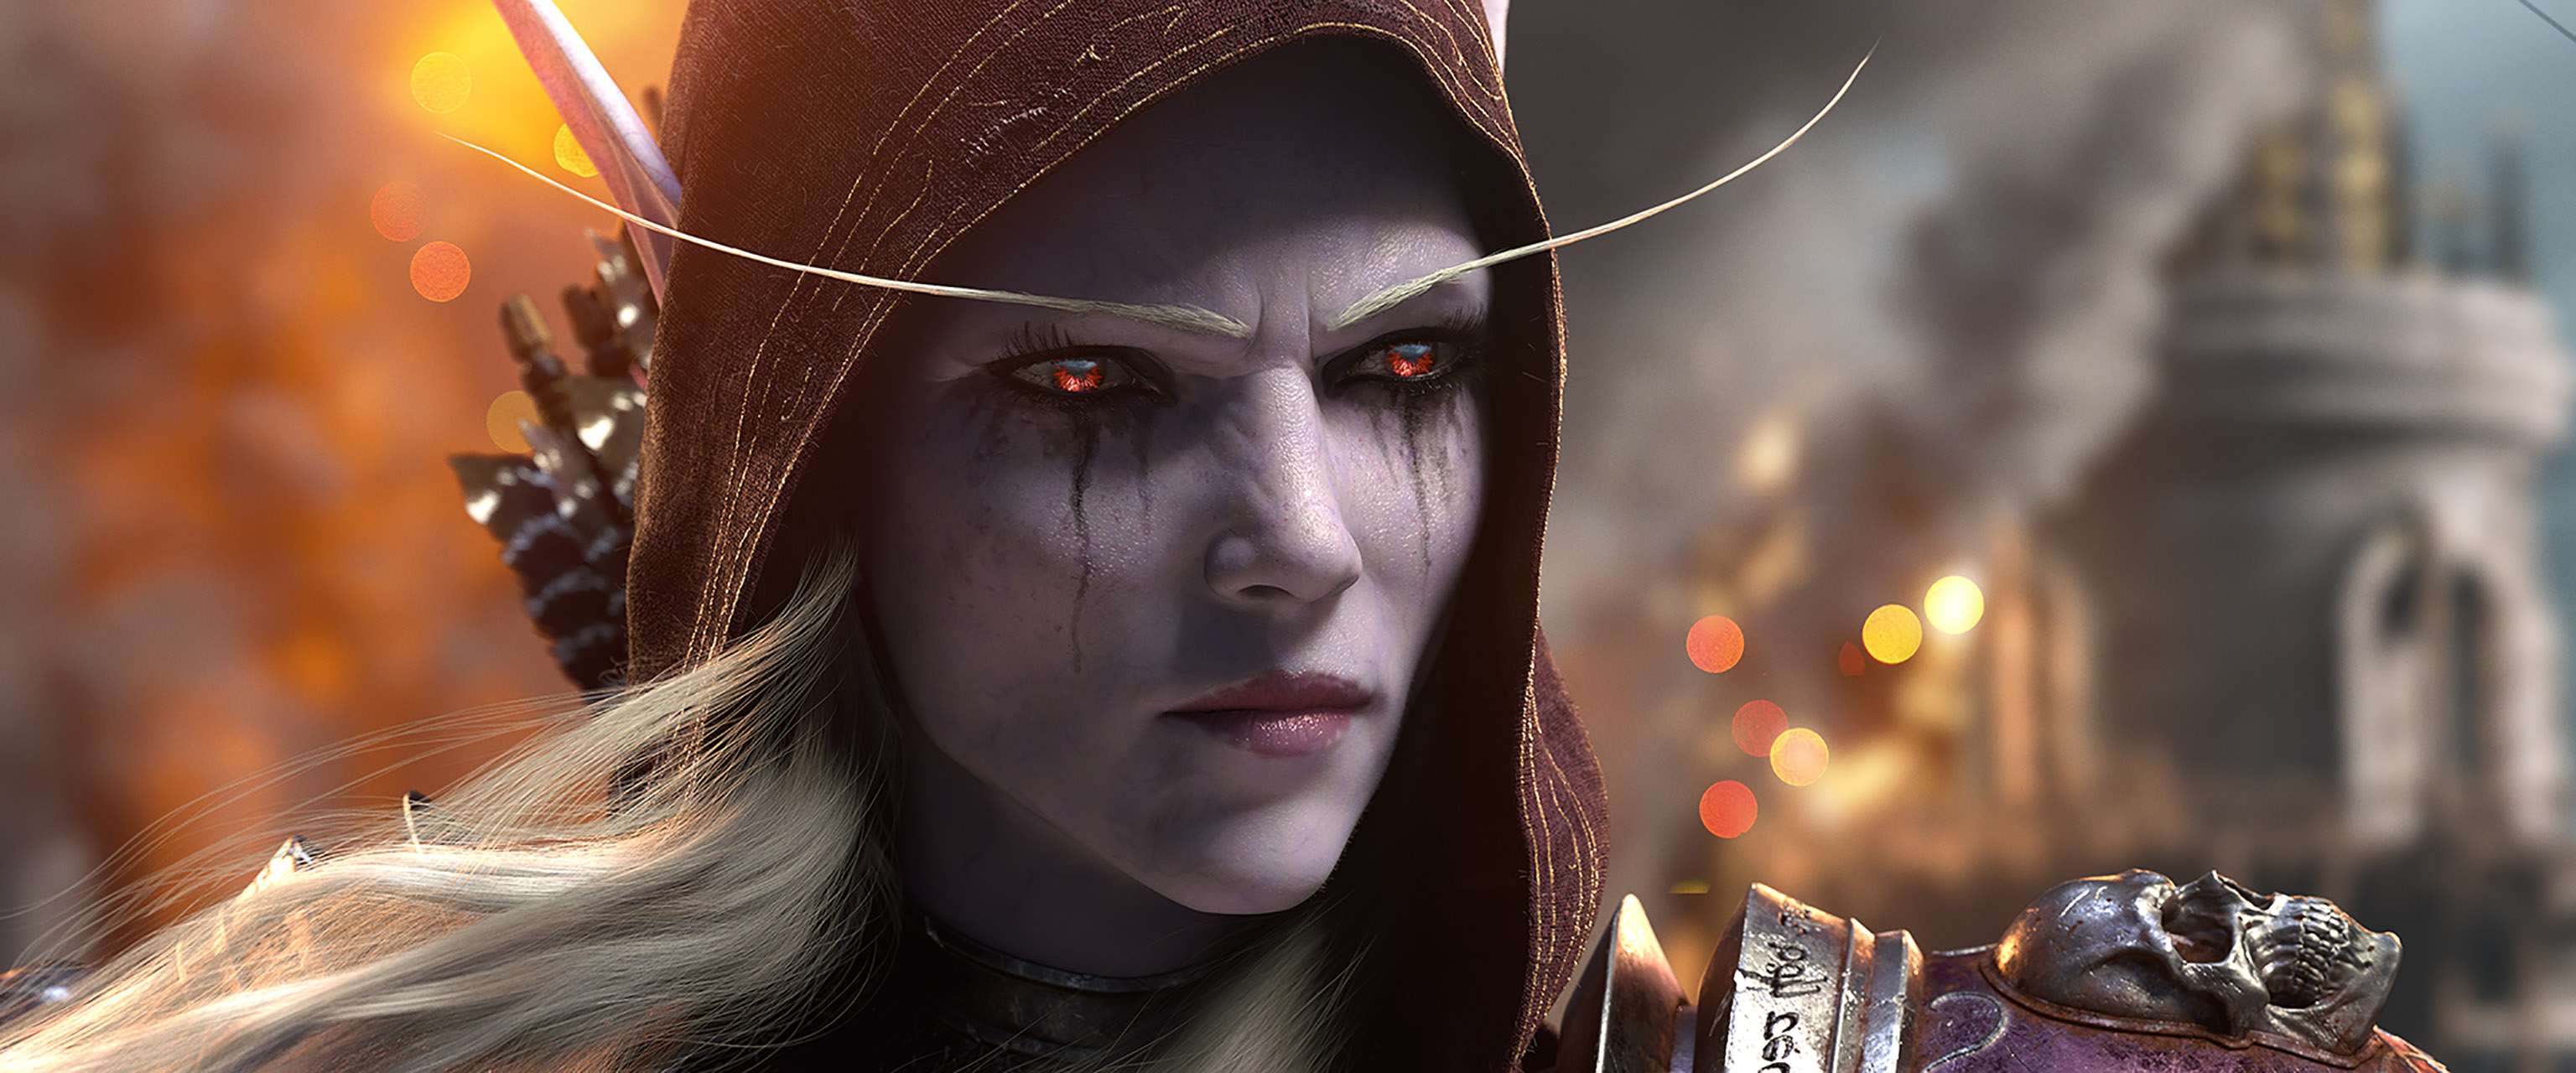 Завантажити шпалери World Of Warcraft: Битва За Азерот на телефон безкоштовно